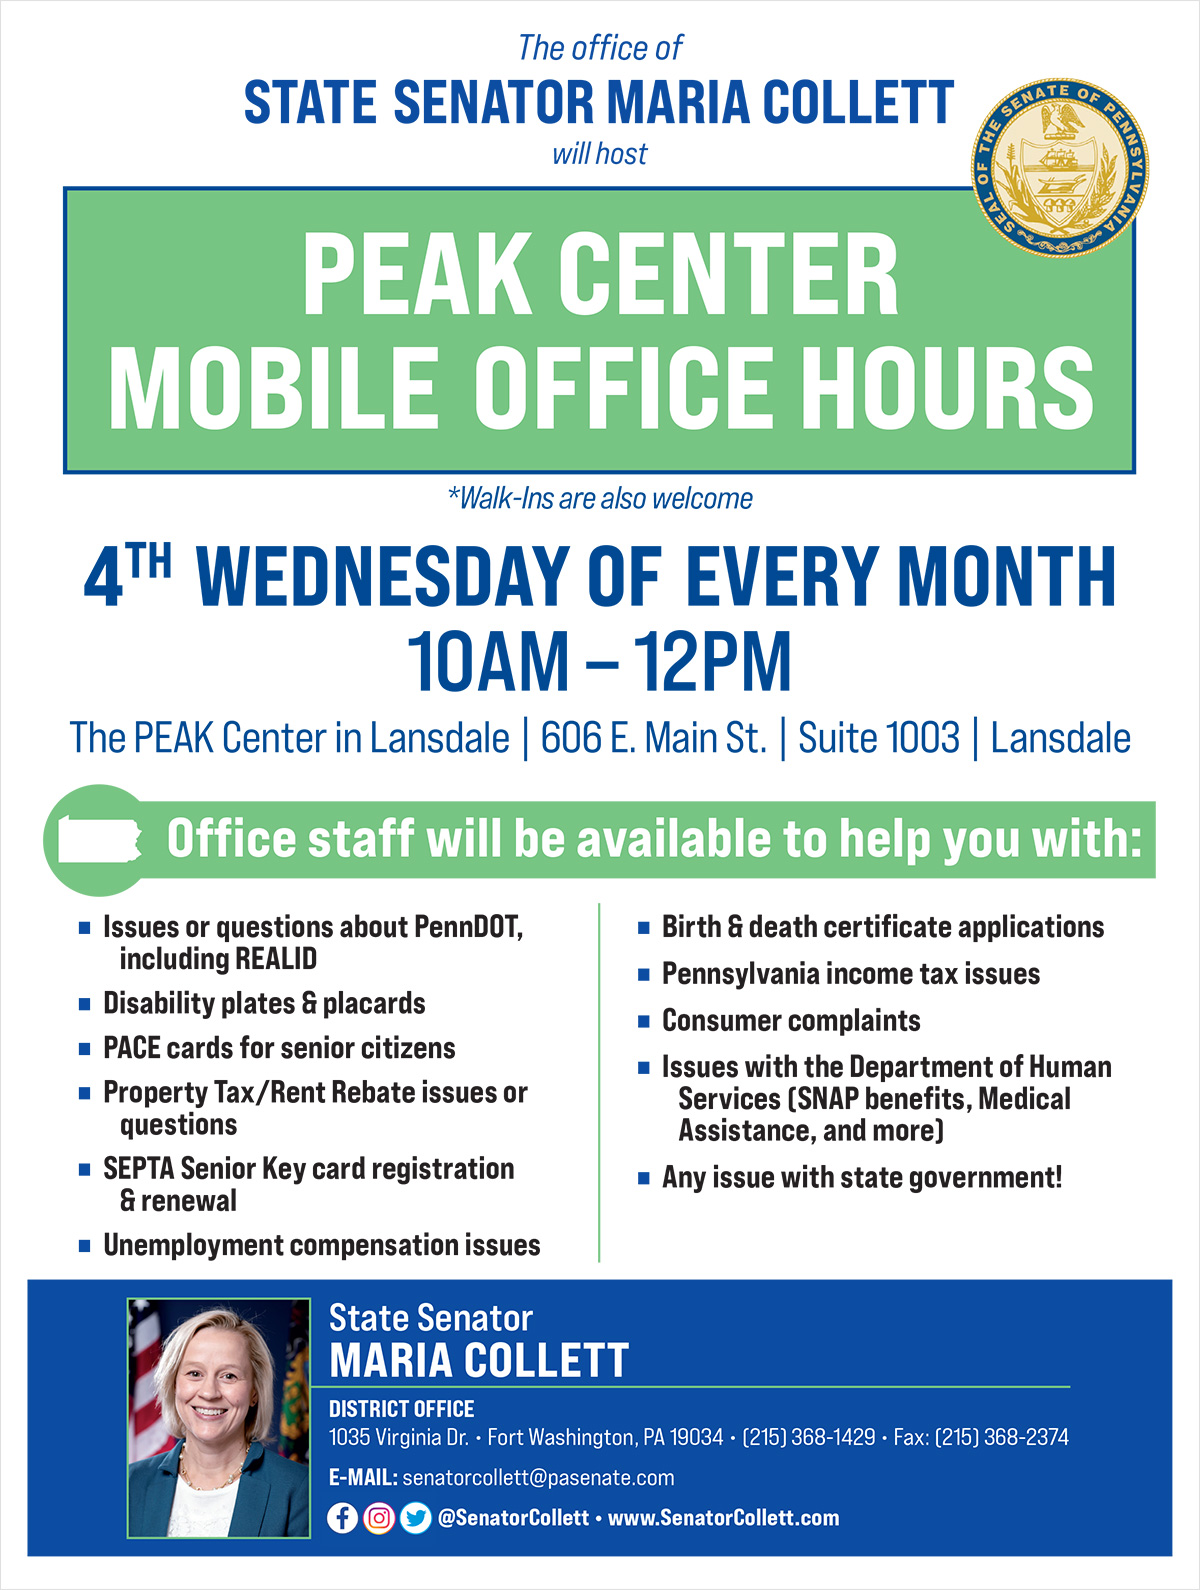 PEAK Center Mobile Office Hours